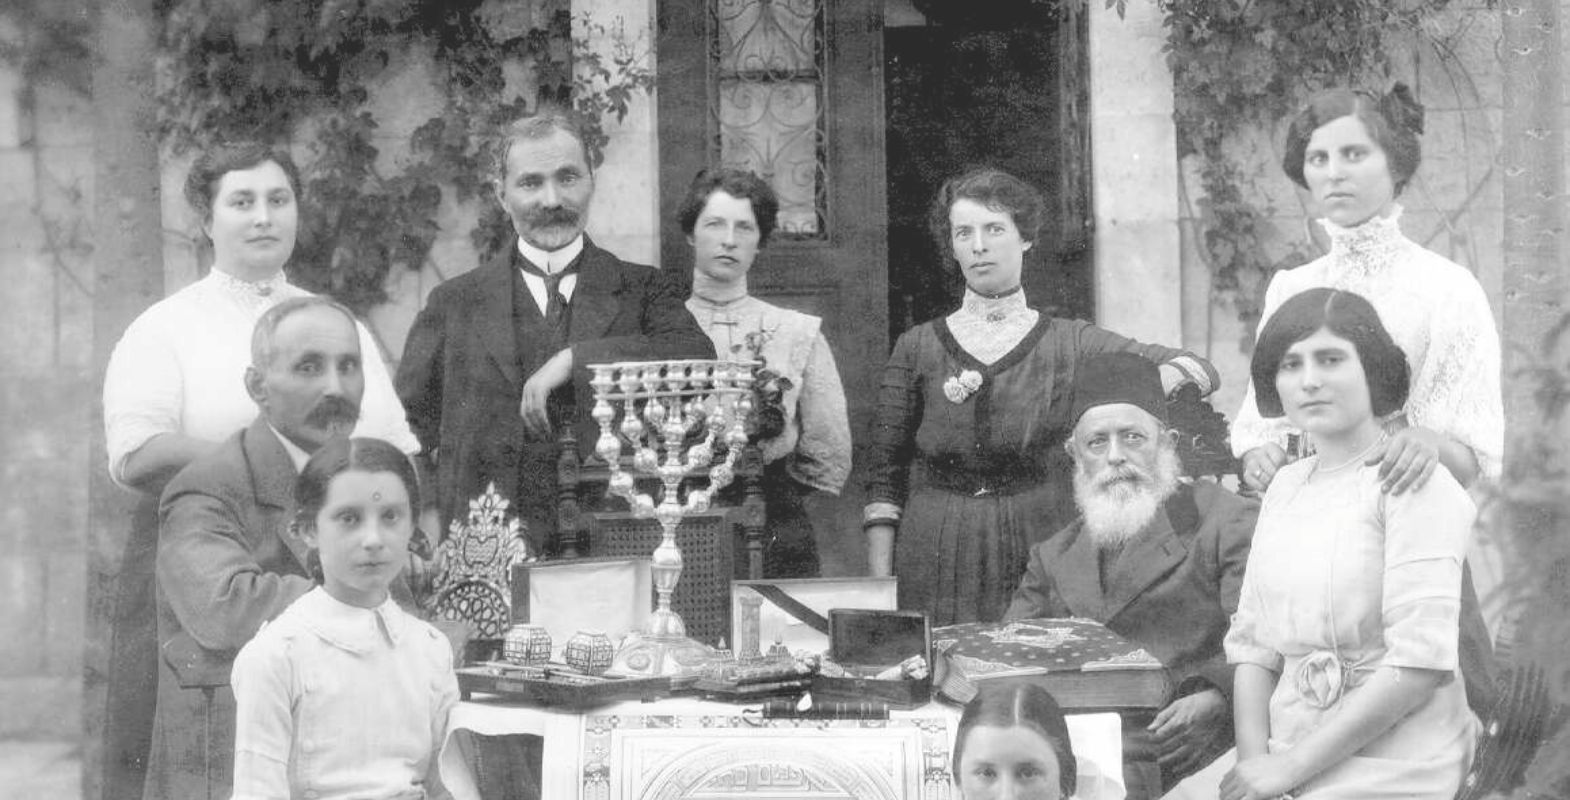 משפחת אליעזר ליפמן (בוים) קאמיניץ עם אפרים כהן (בעל המלון ההסטורי בירושלים בו התארחו הרצל, רוטשילד ועוד ), (1912). מסביב לשולחן עם חנוכיה.